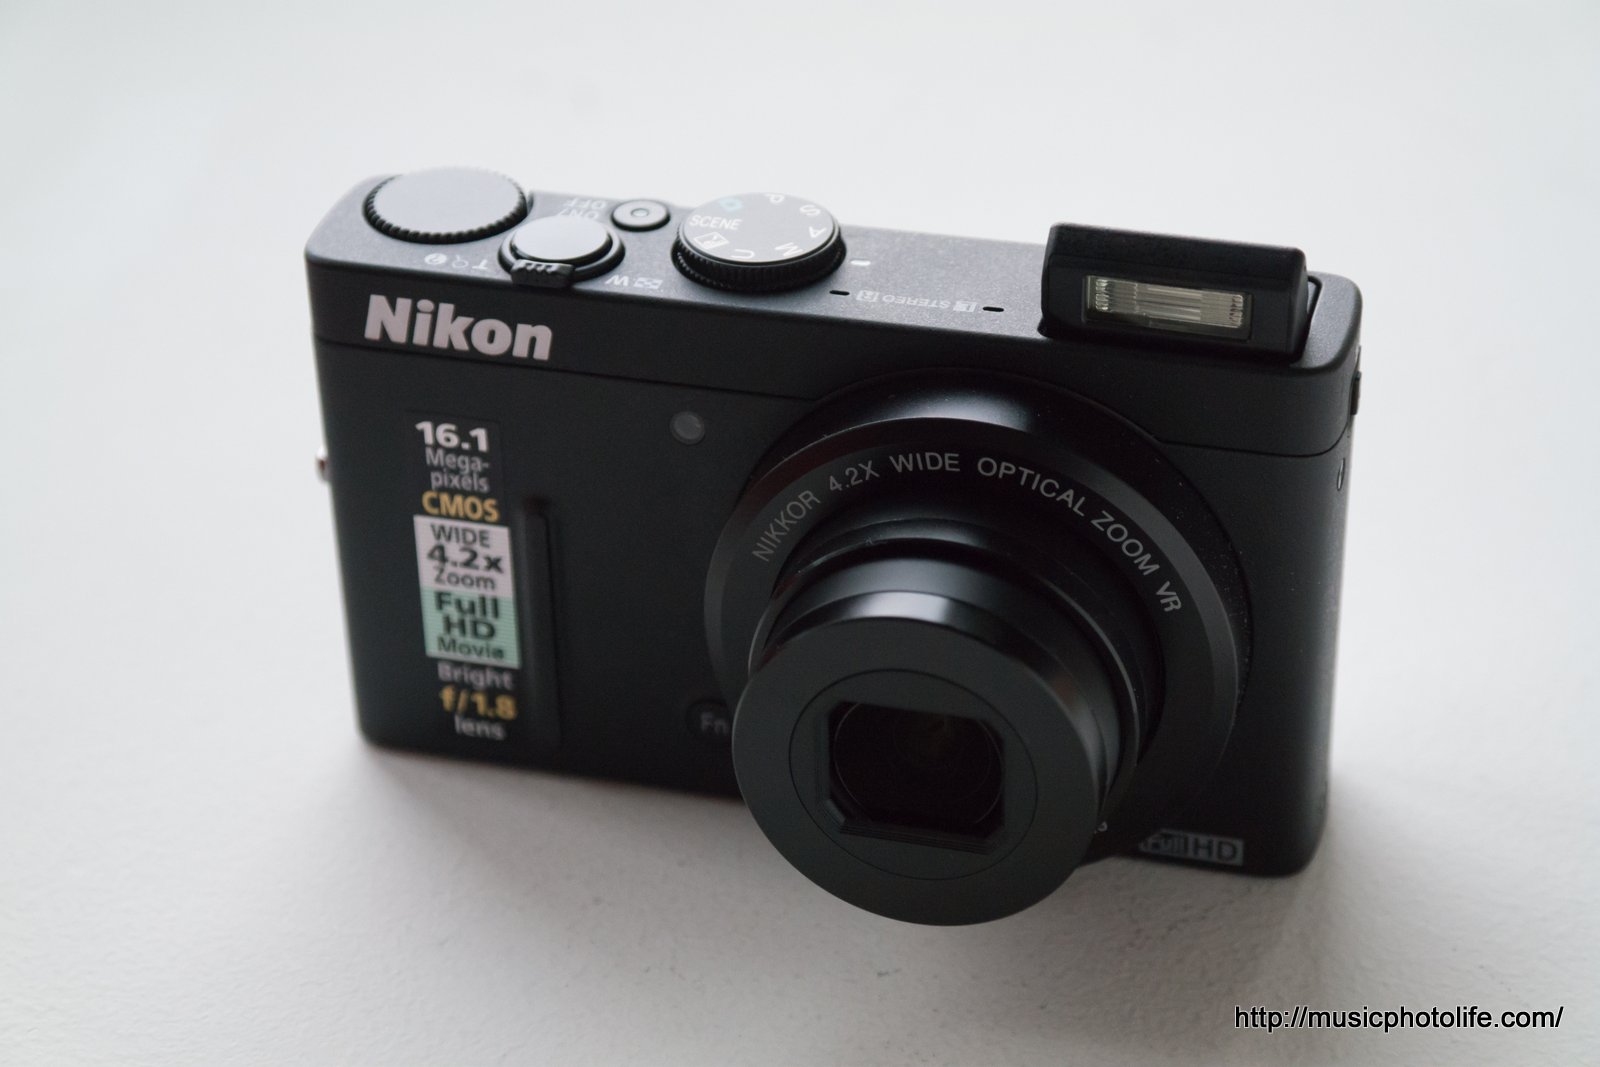 Nikon Coolpix P: Compact Bright Lens Camera